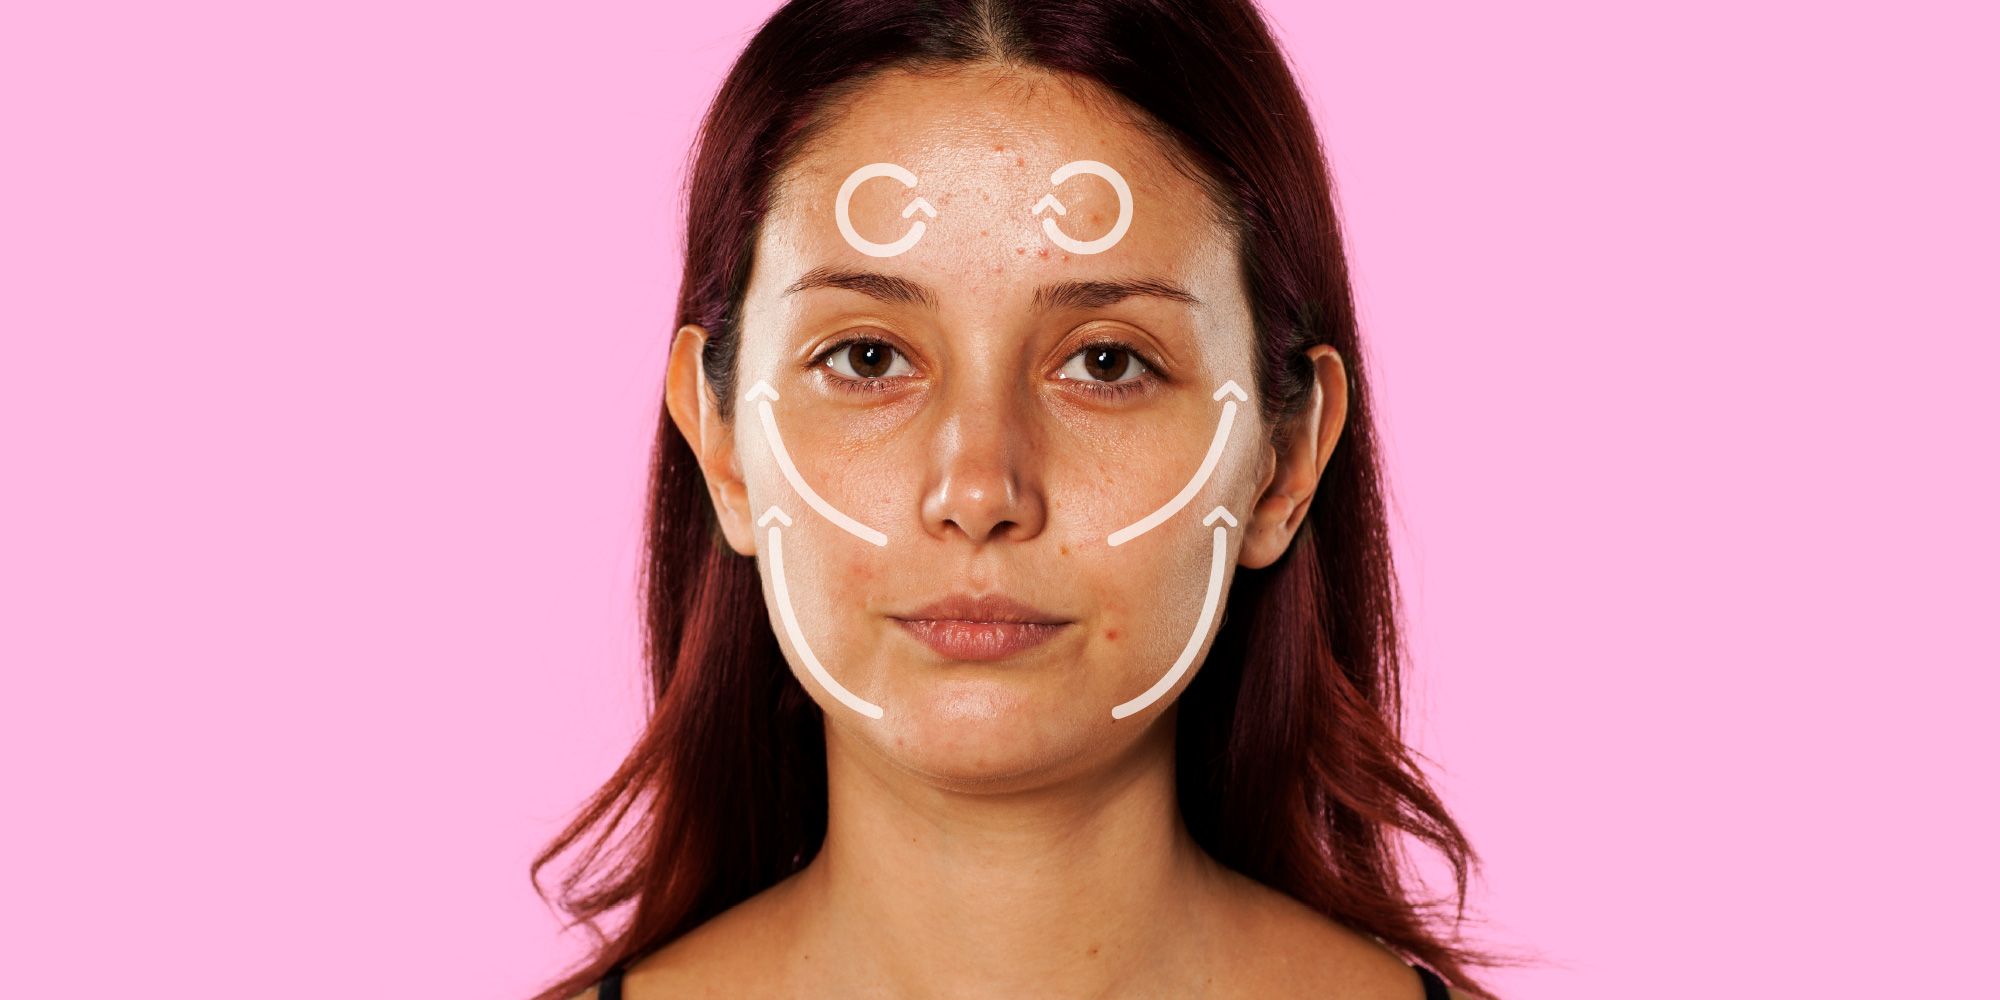 How To Do A Facial Massage Yourself - Facial Massage Benefits